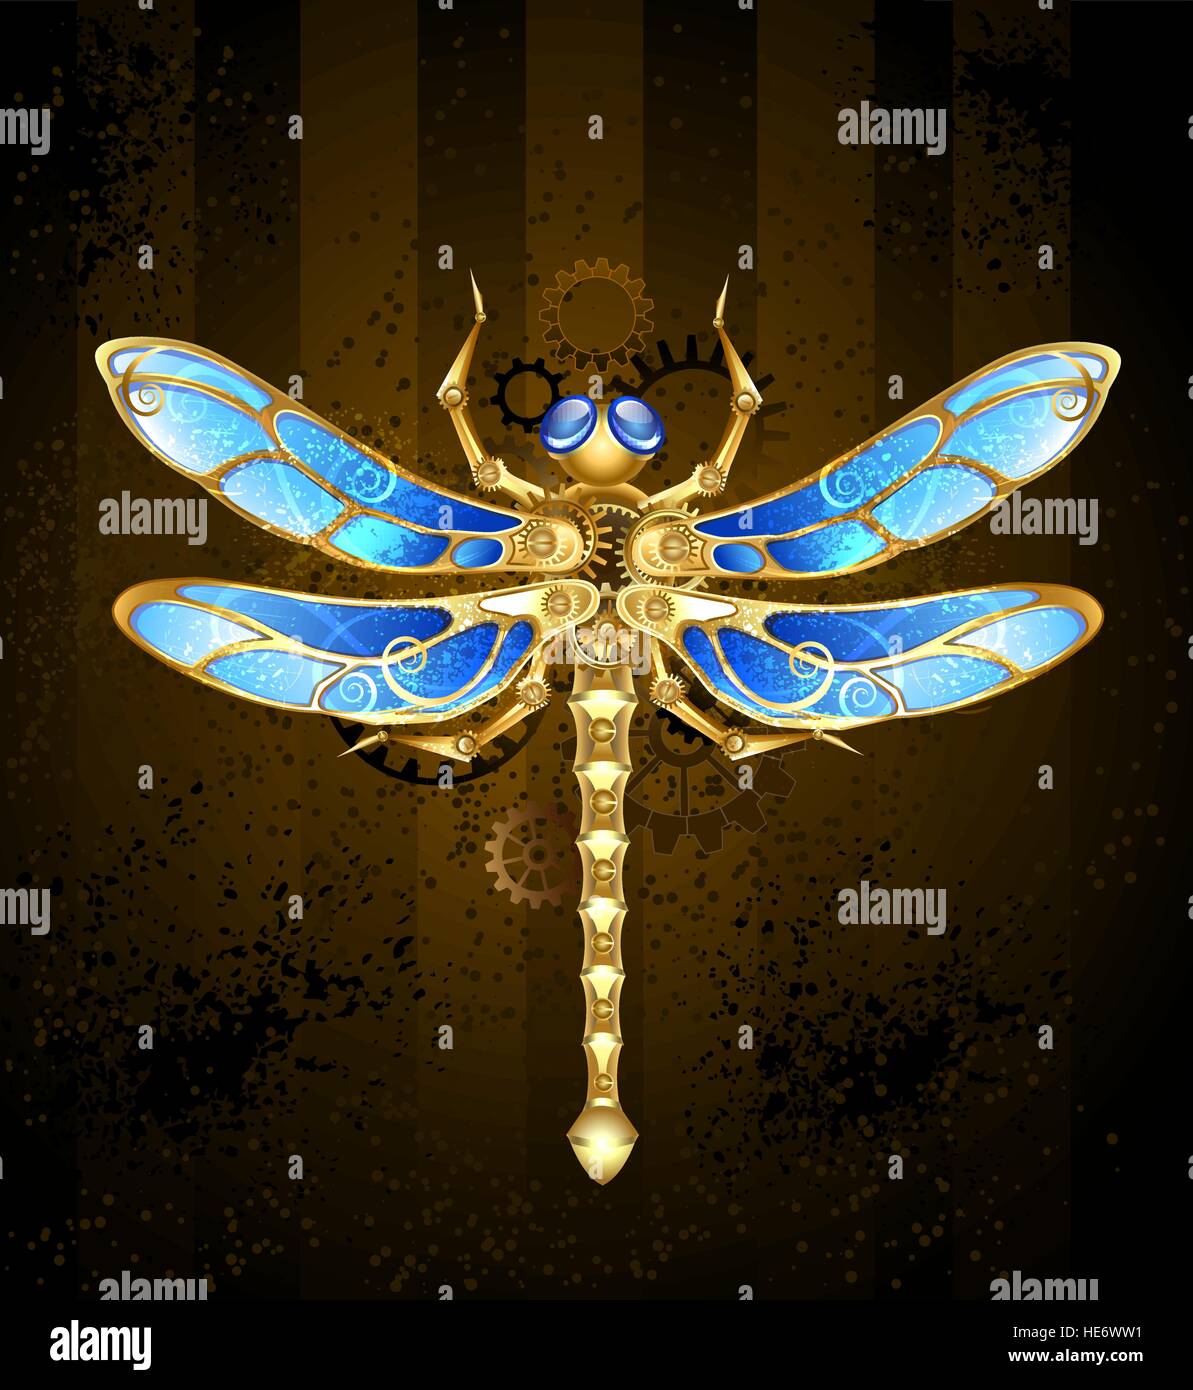 Libellule mécanique laiton et d'or avec les ailes ornées de verre bleu et pignons Illustration de Vecteur